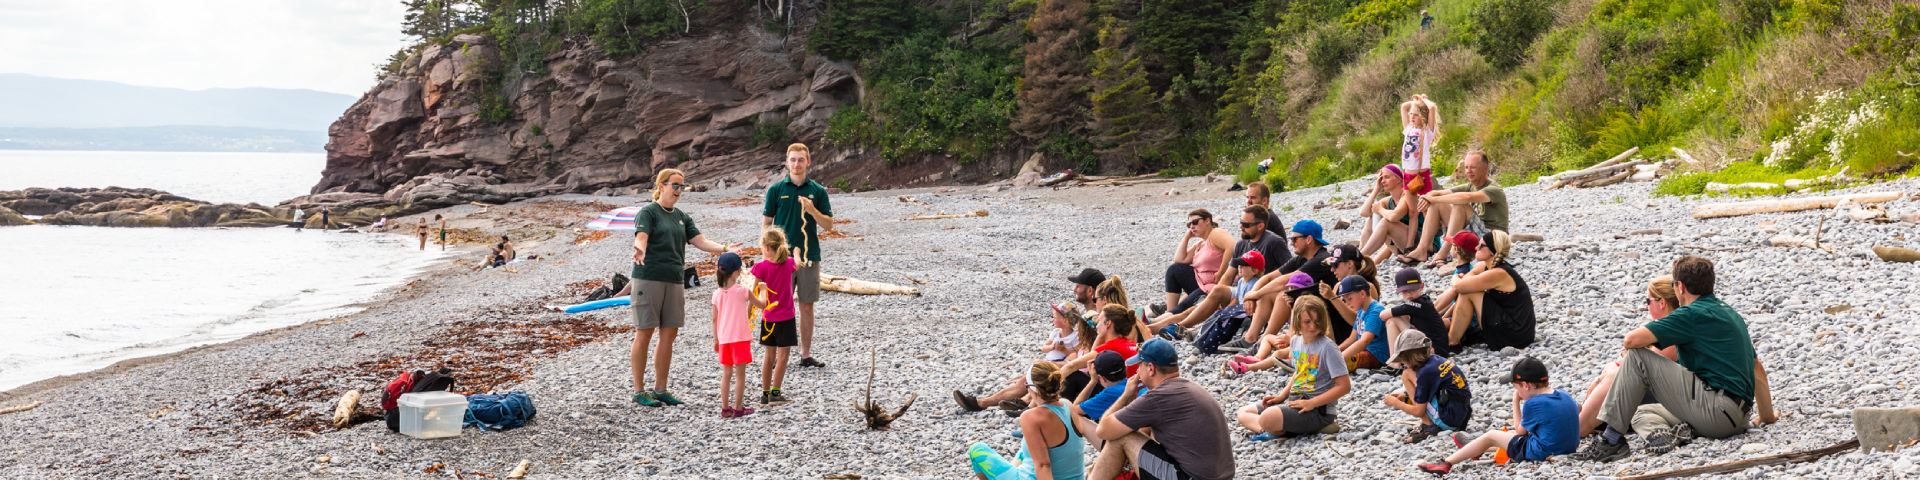 Un groupe de visiteurs participe à une activité avec des employés de Parcs Canada sur une plage de galets..